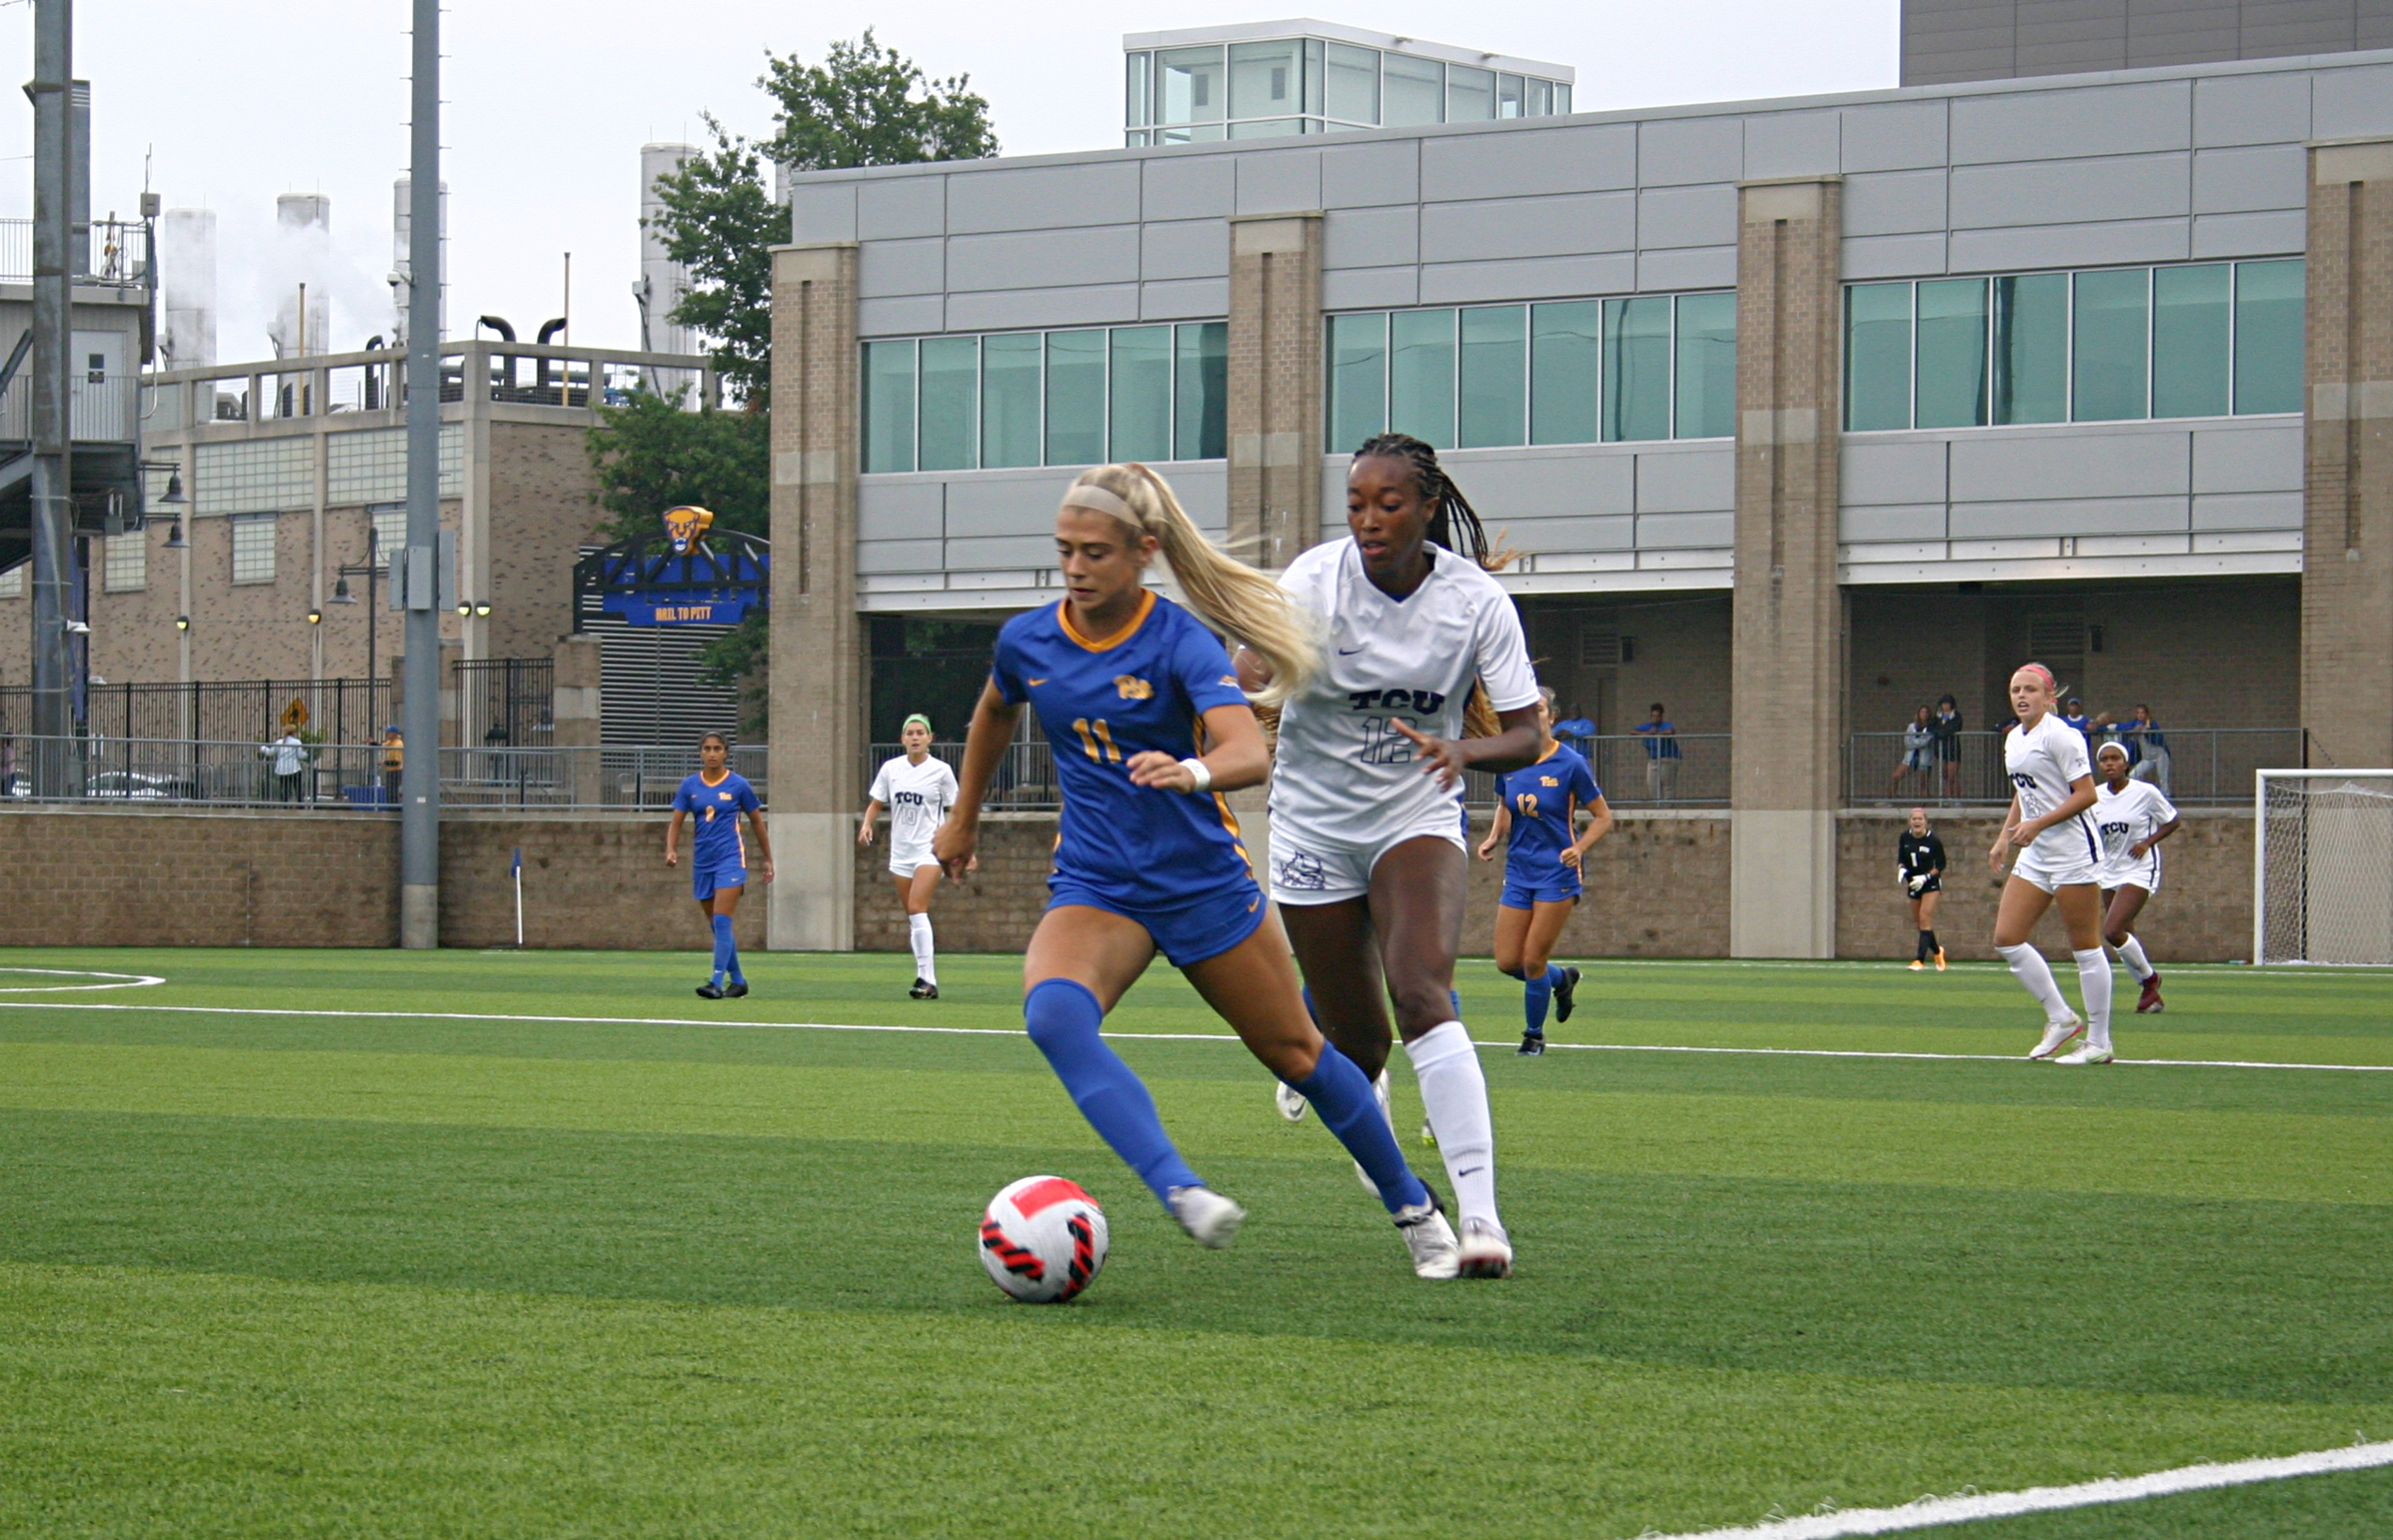 Pitt women's soccer defender Hailey Davidson